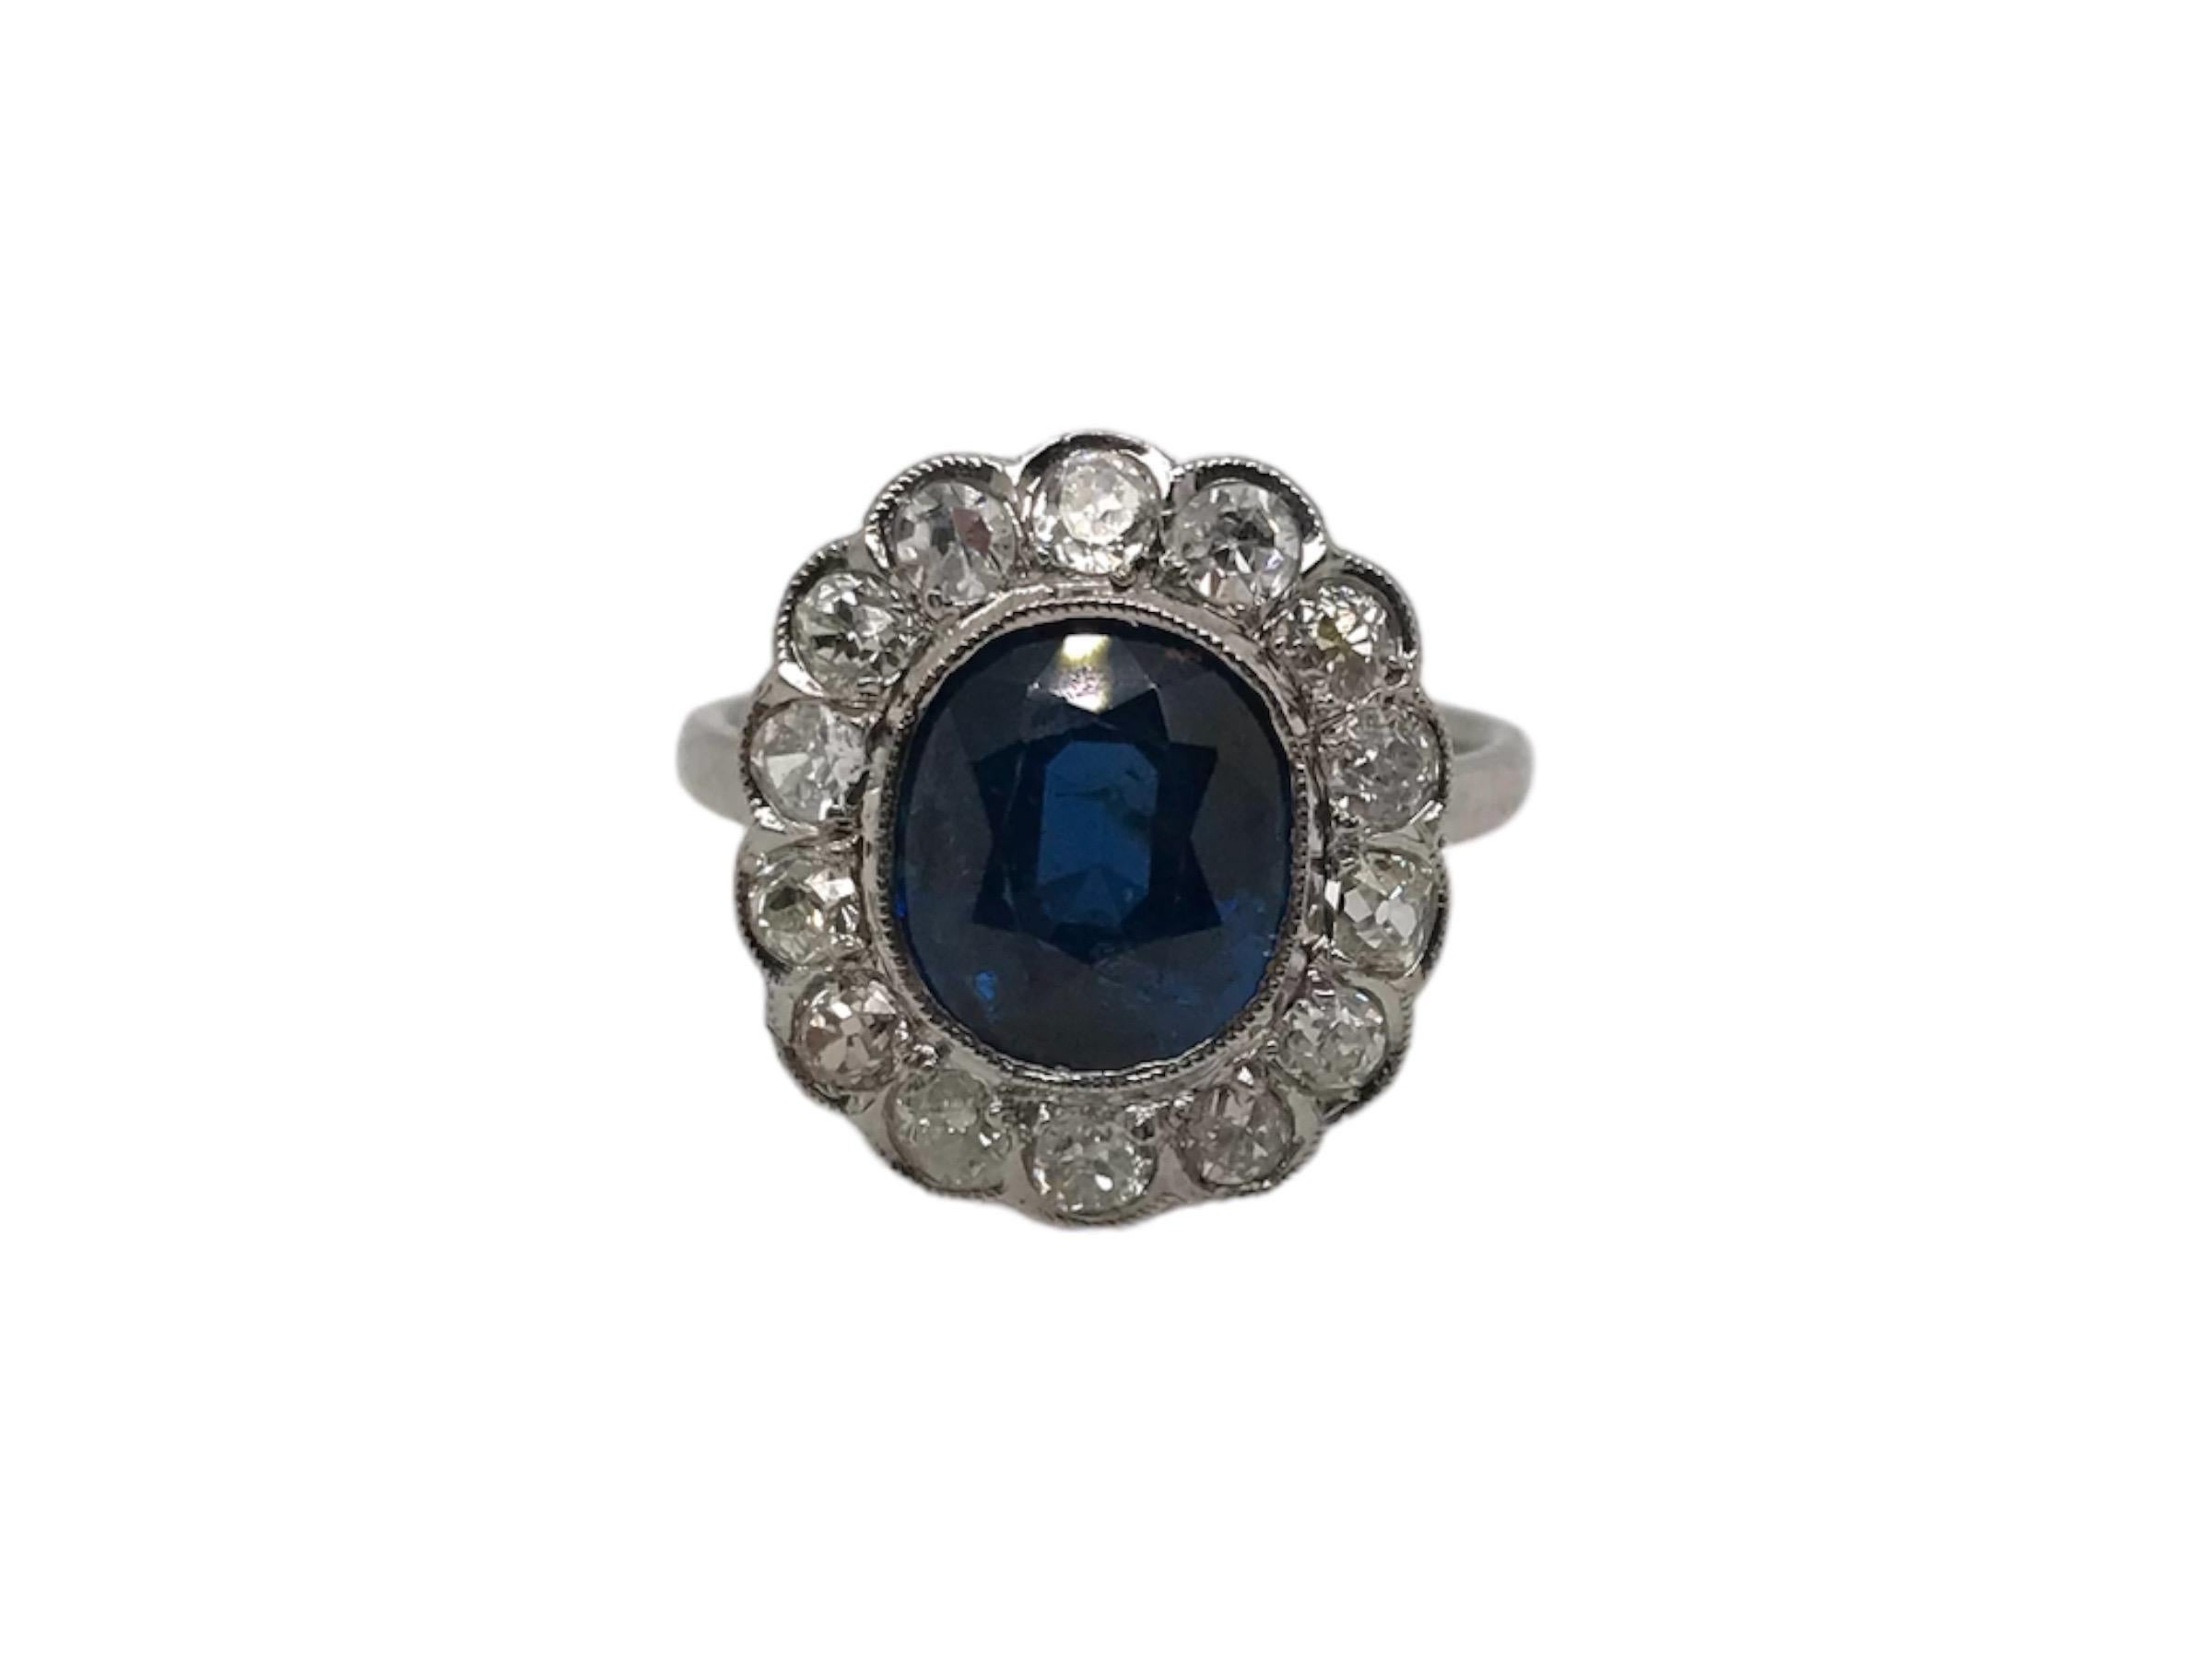 Cette beauté est un classique !
Fabriquée à l'époque de l'Art déco, entre 1920 et 1940, cette magnifique bague est ornée d'un saphir bleu entouré d'un ensemble de diamants de taille ancienne. 

Le saphir bleu est estimé à 3,25 carats et possède un